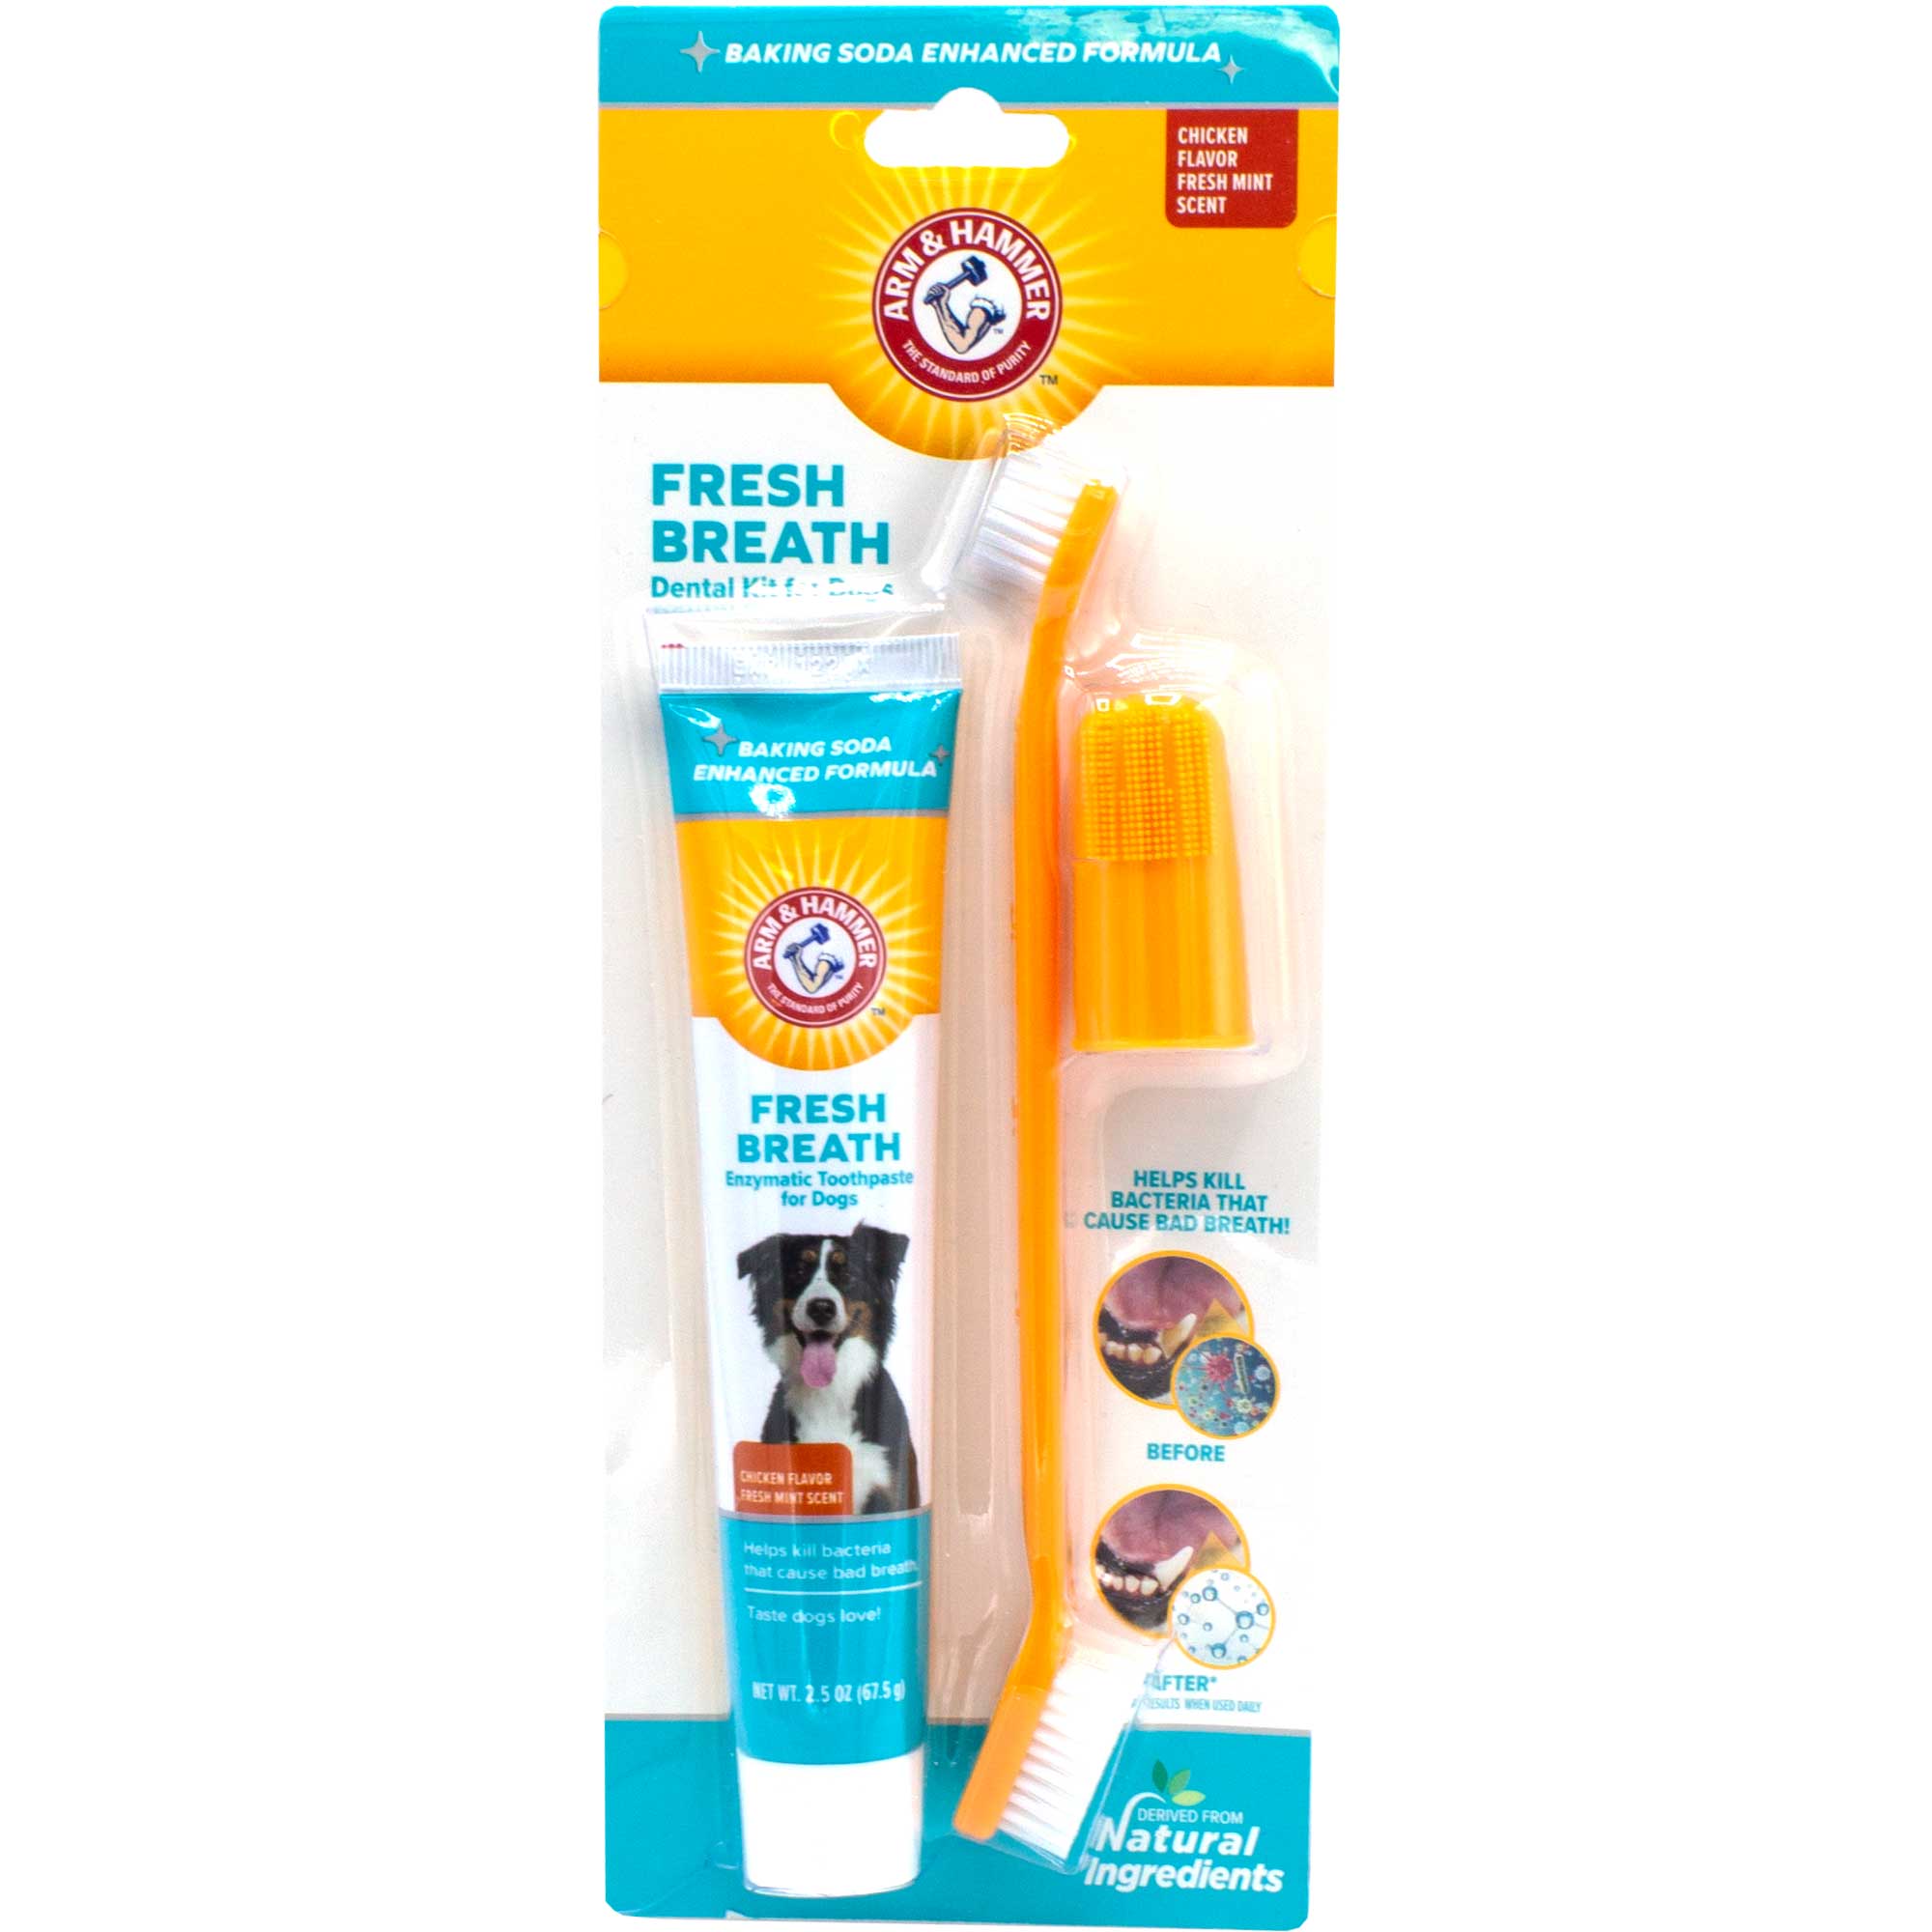 Arm & Hammer Fresh Breath Dental Kit Usage